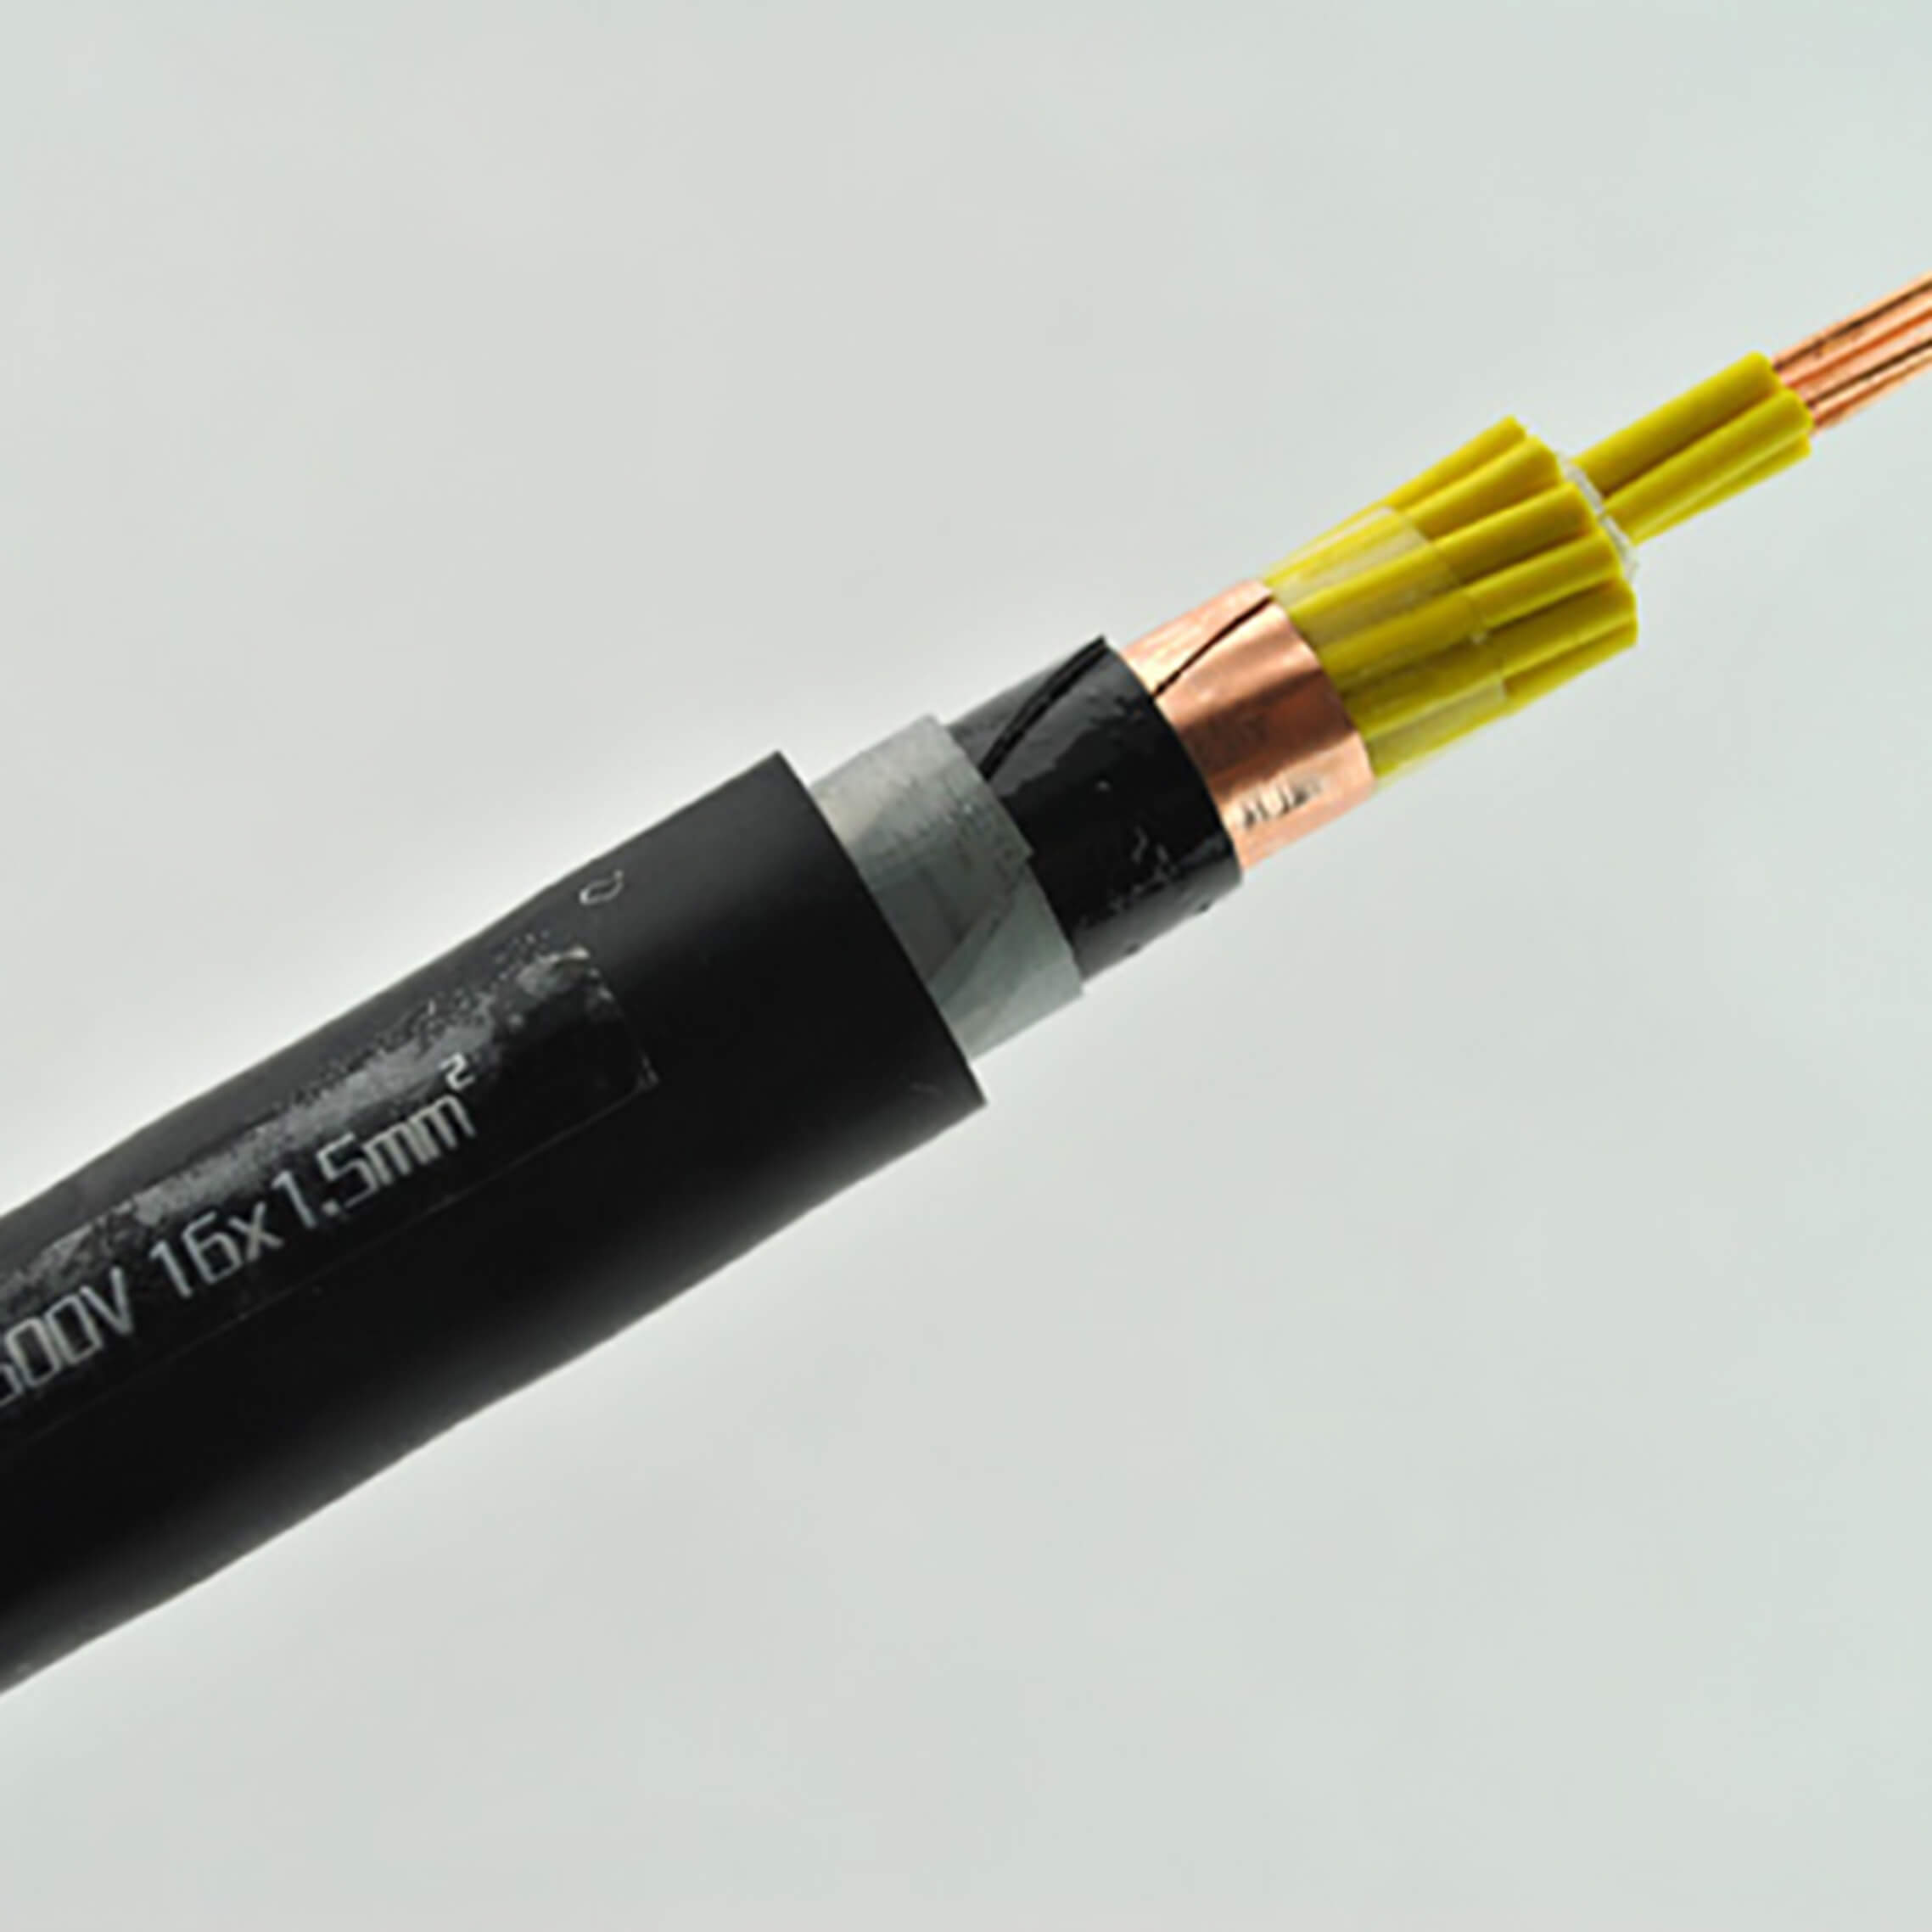 Высококачественная медная лента с двойным экраном, бронированный кабель управления, сигнальные провода для электроники, 16-жильный кабель 1,0 м2, 1,5 мм2, 16awg, KVVP2, контрольный кабель